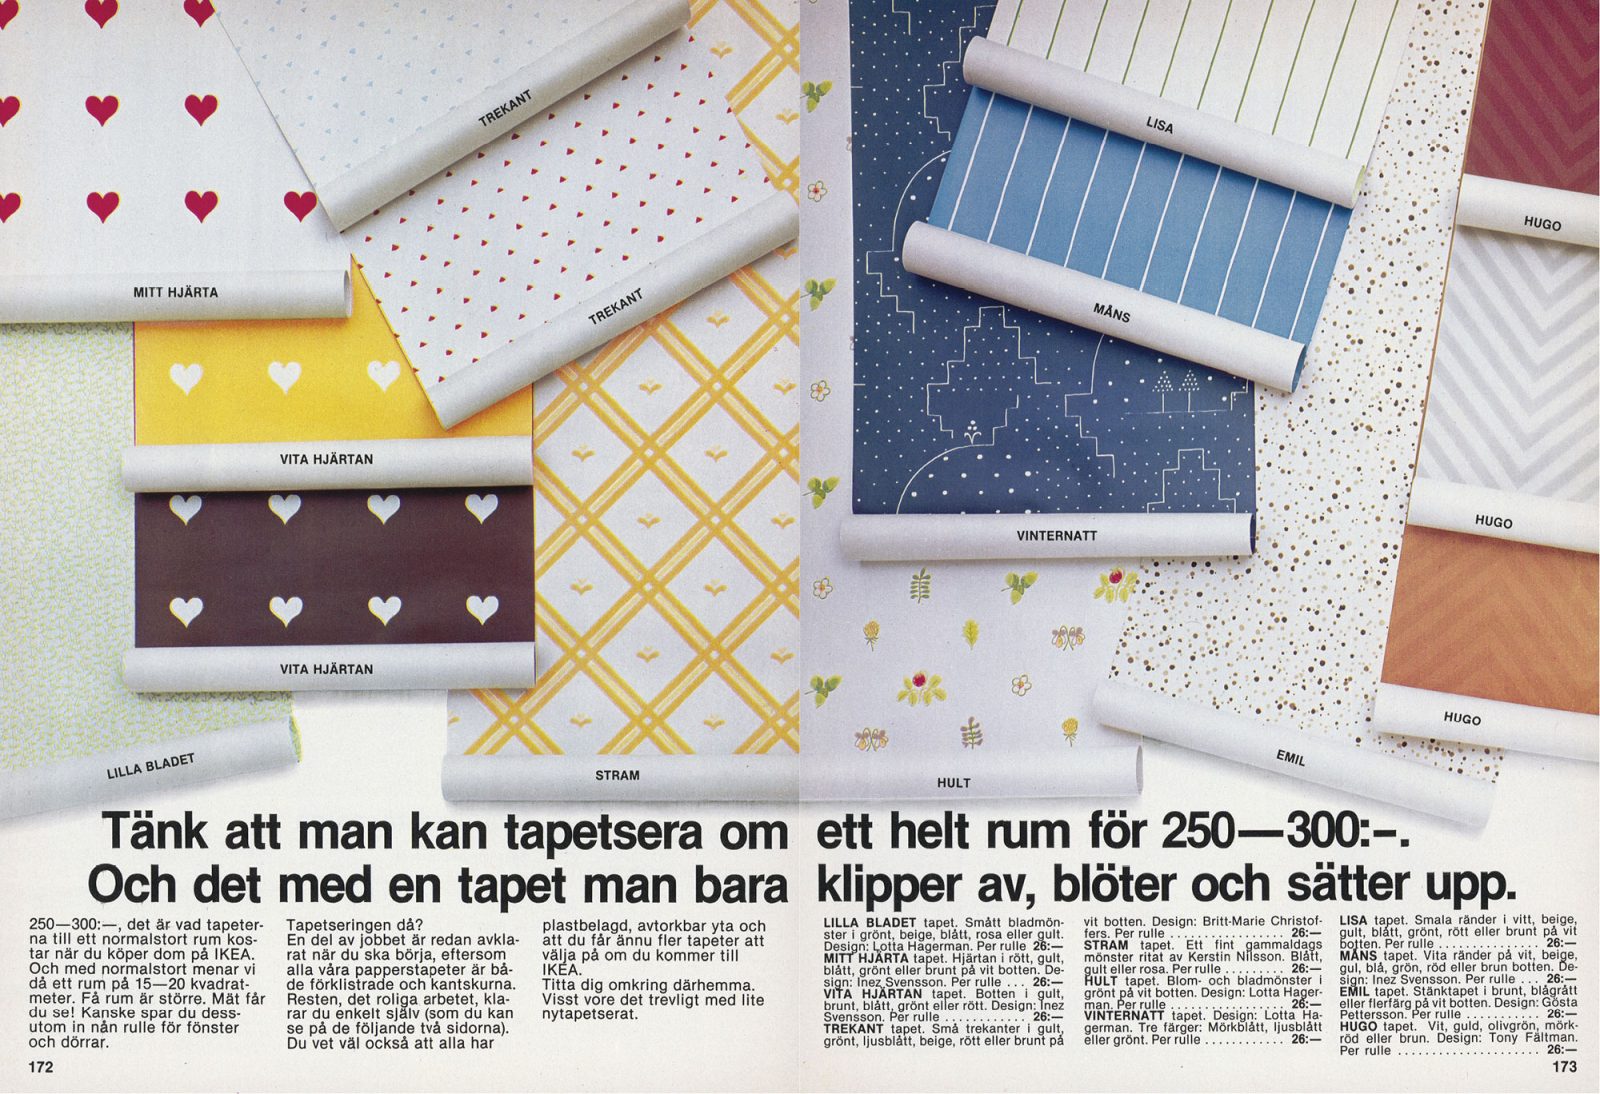 1979 IKEA catalogue spread featuring various wallpaper patterns including MITT HJÄRTA and VITA HJÄRTAN, and TREKANT.